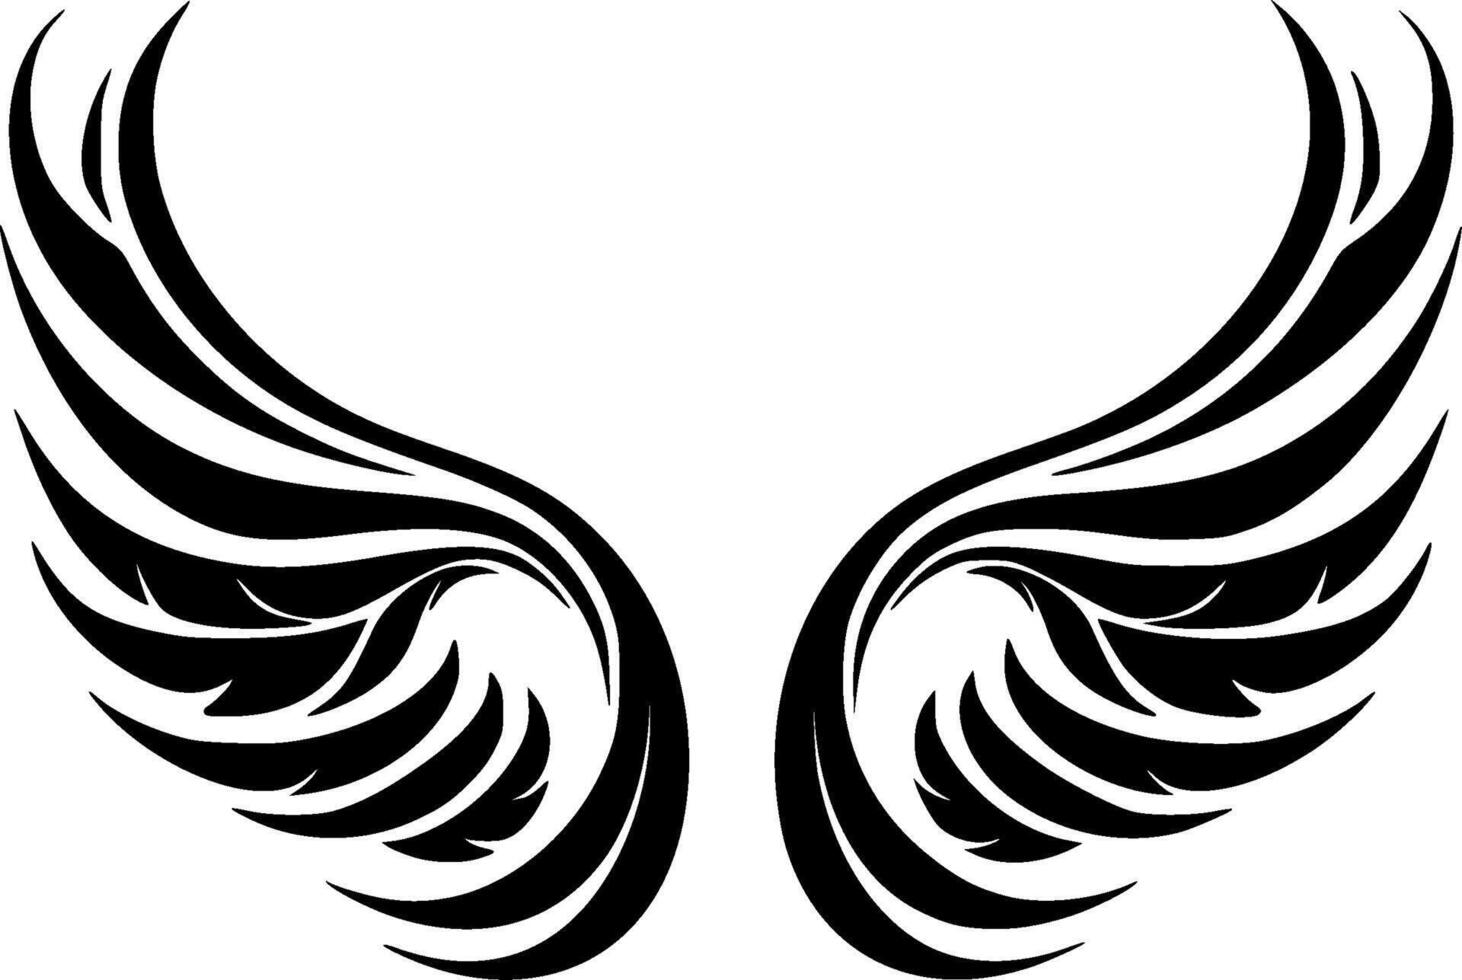 Engel Flügel - - hoch Qualität Vektor Logo - - Vektor Illustration Ideal zum T-Shirt Grafik